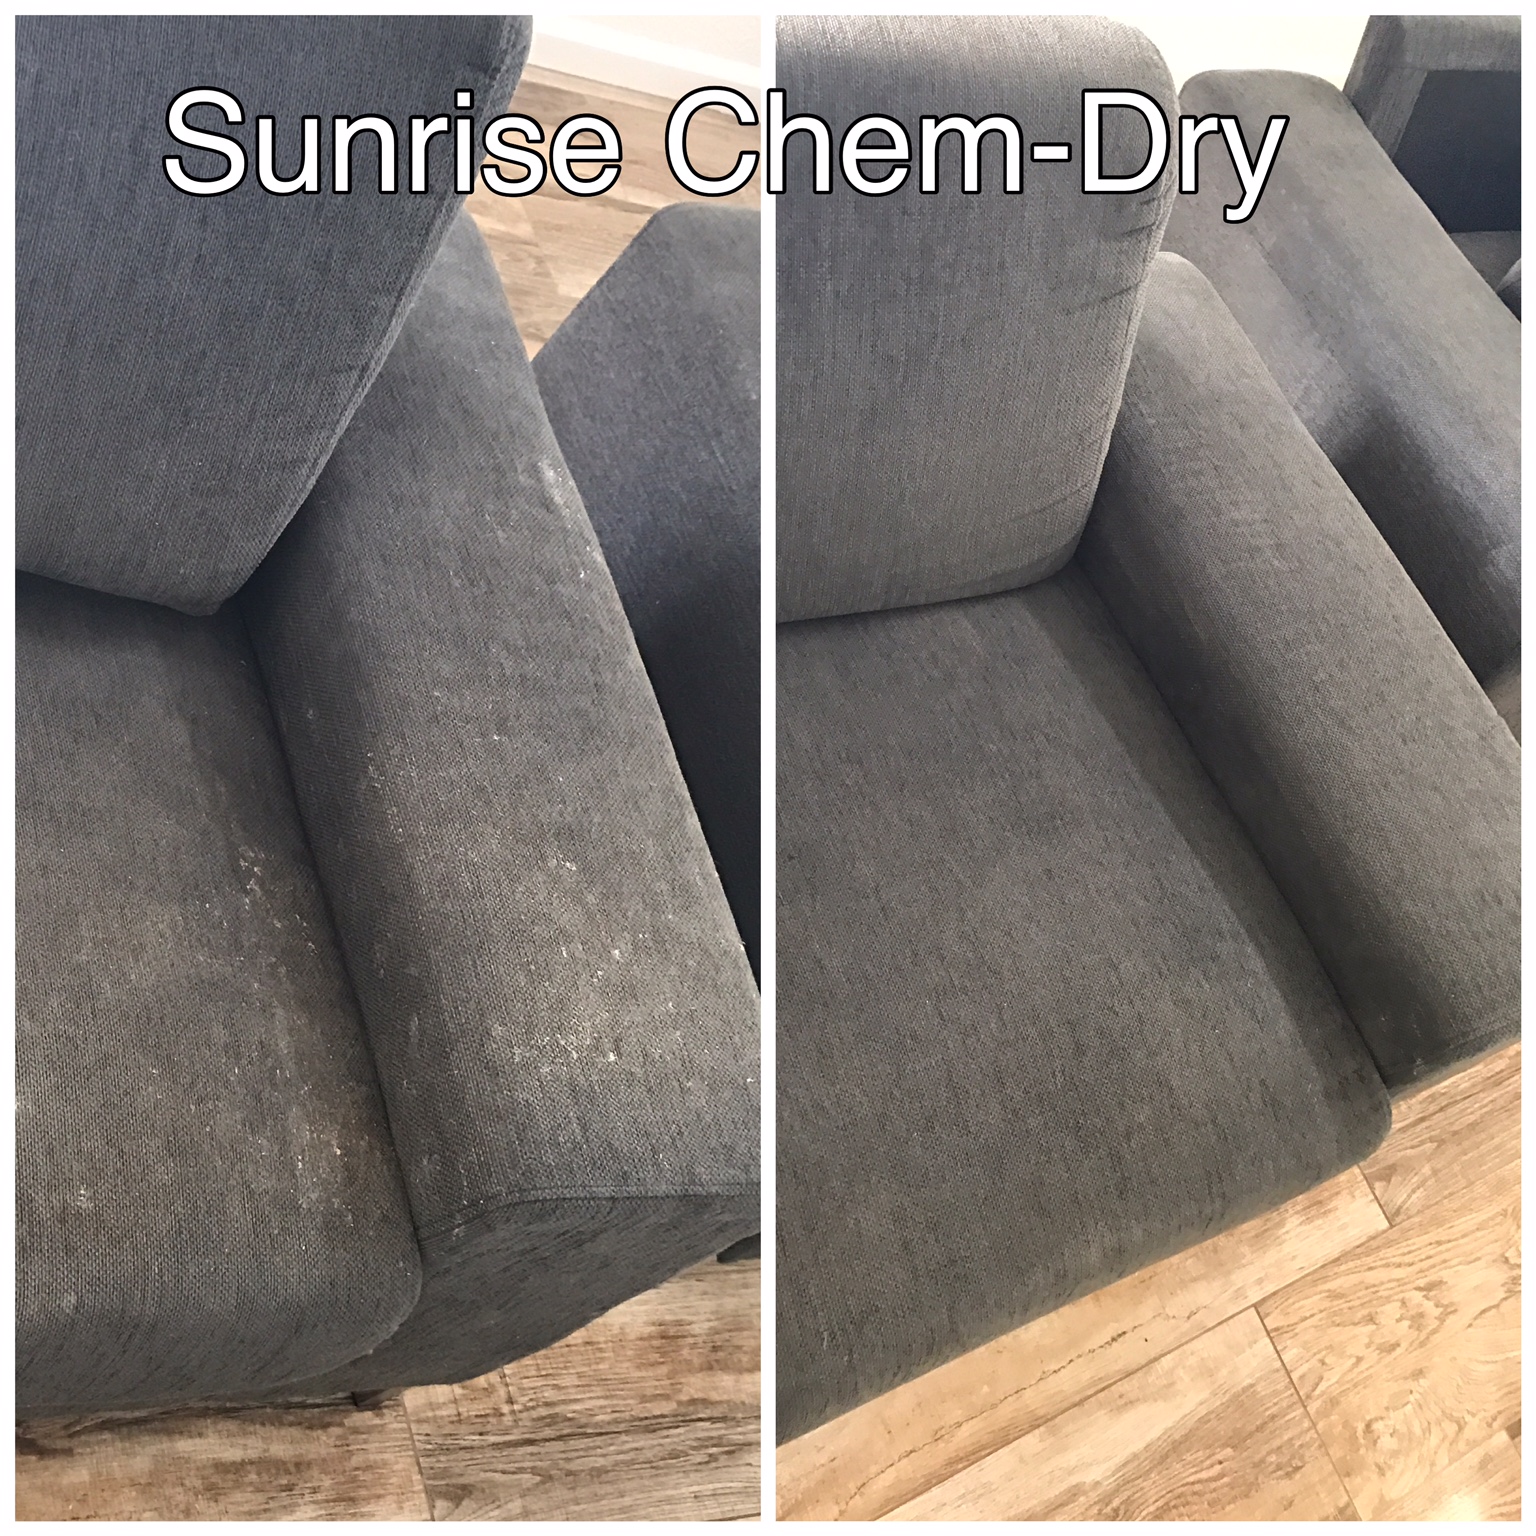 Sunrise Chem-Dry Photo